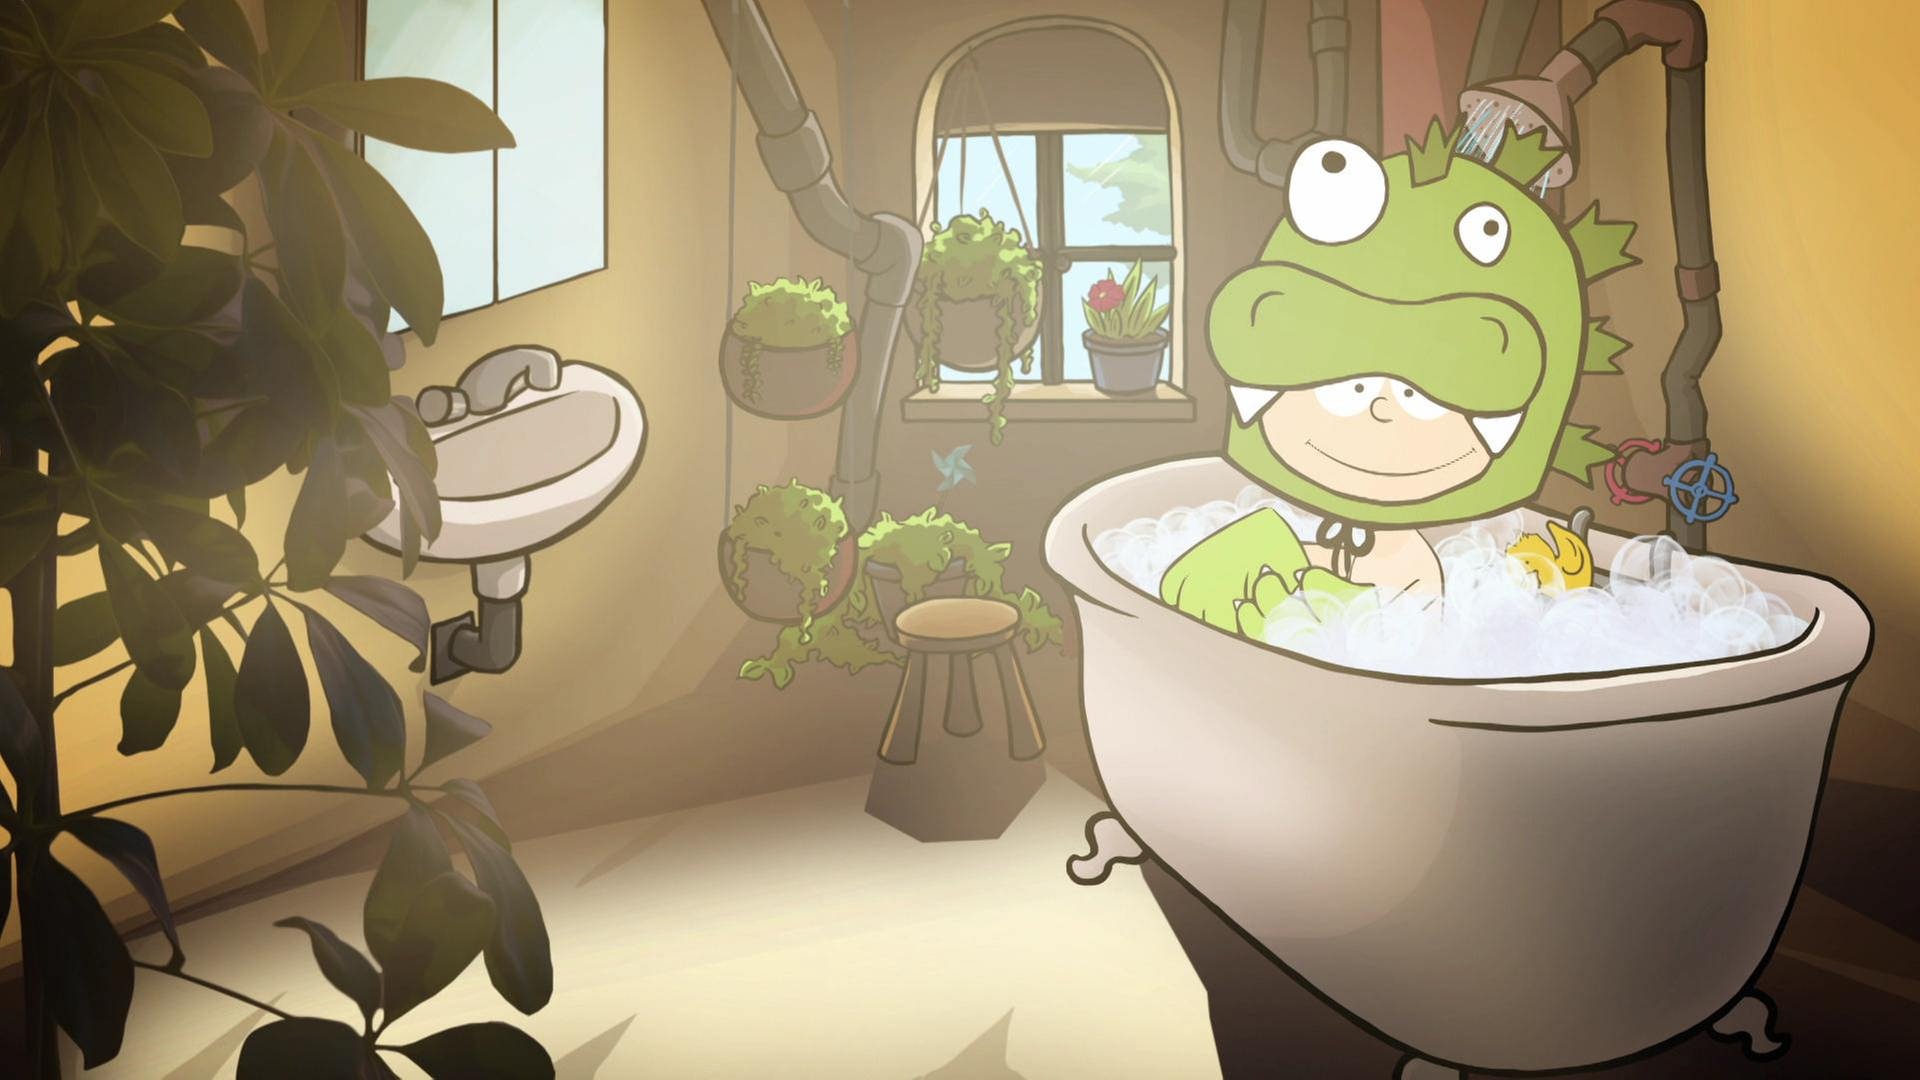 Der kleine Philosoph Knietzsche sitzt in einem grünen Monsterkostüm in einer vollen Badewanne.